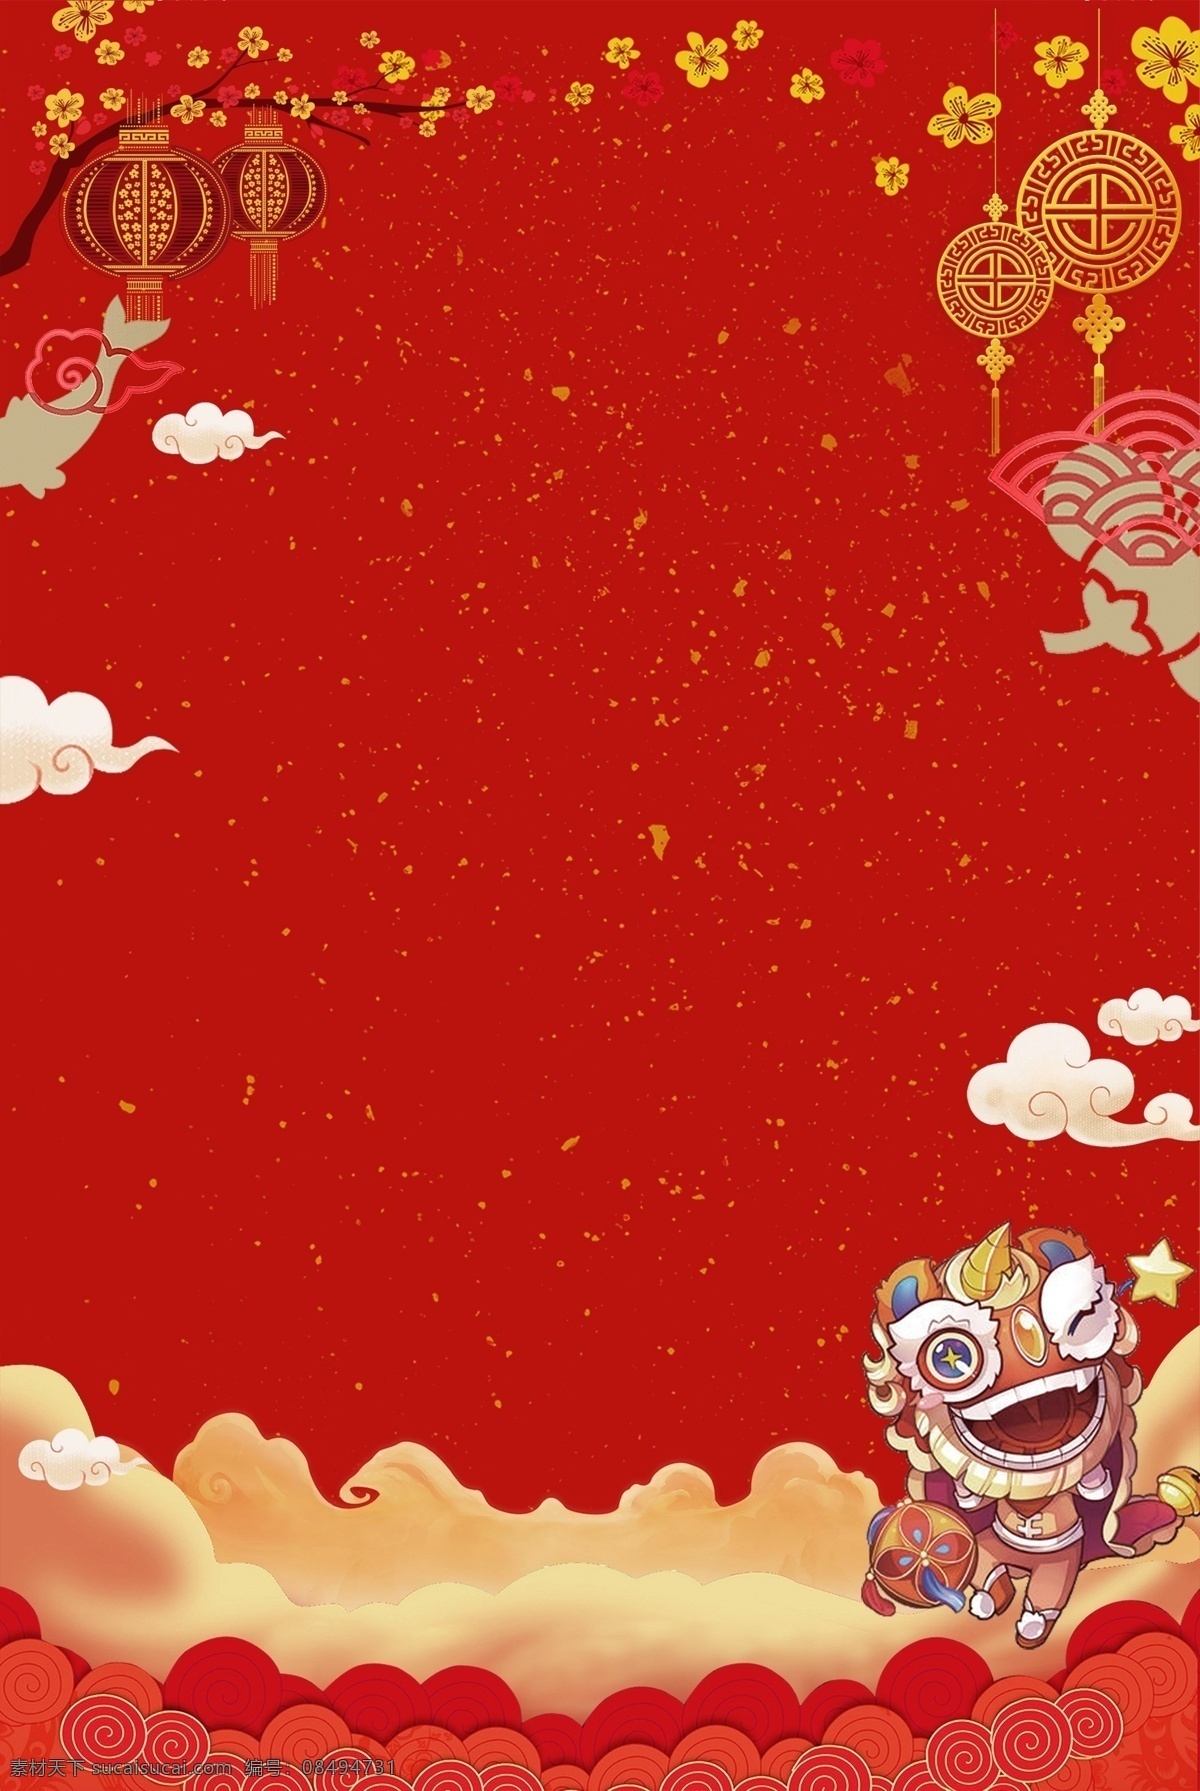 元旦 春节 灯笼 中国结 舞狮 画册设计